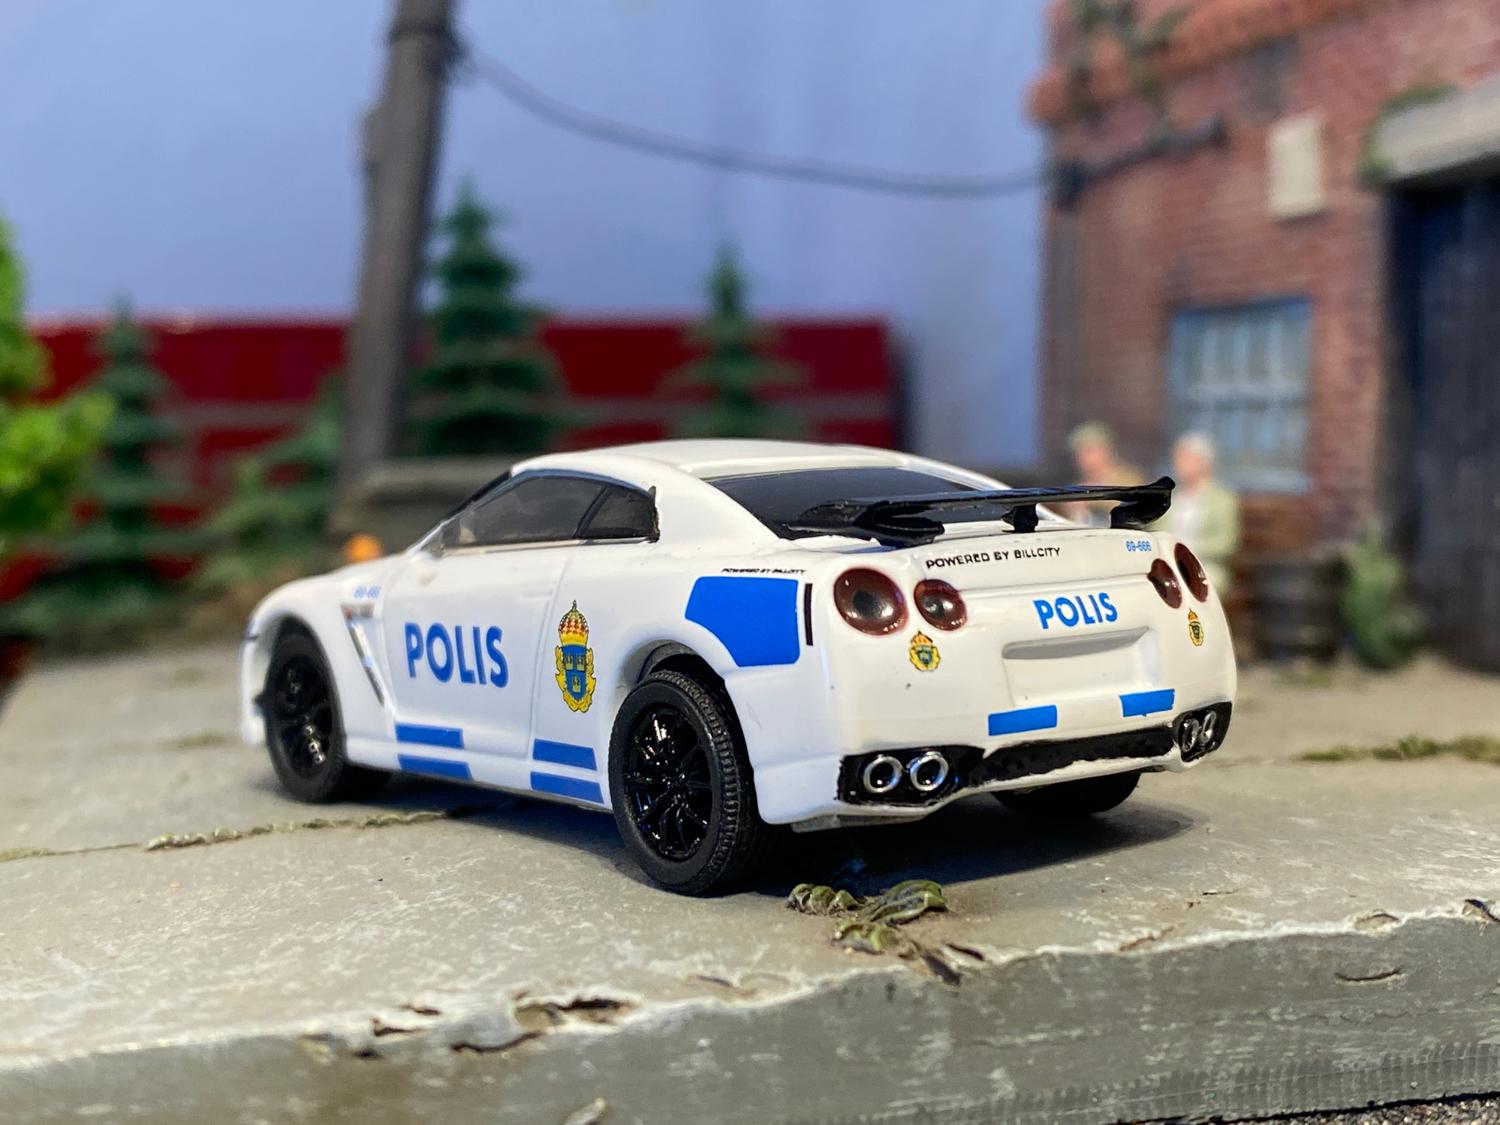 Skala 1/64 Nissan GT-R (R35) Svensk Polis Stockholm "Hot Pursuit" från Greenlight